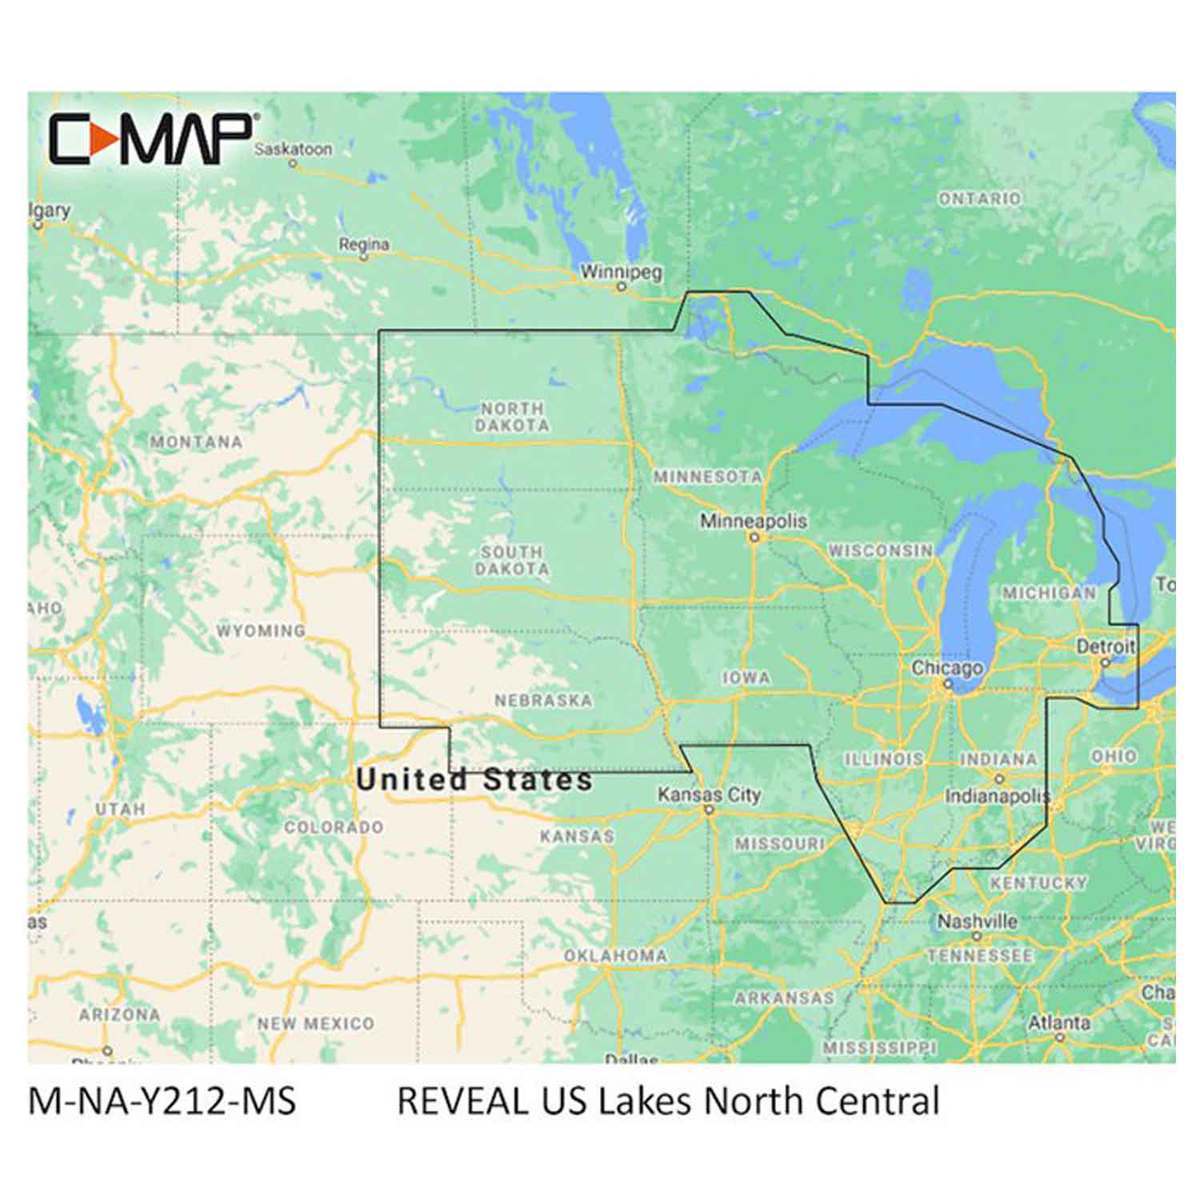 Lowrance C Map Reveal Us Lakes Map Software North Central 1703754 1 ?context=bWFzdGVyfGltYWdlc3wxMjEyMTl8aW1hZ2UvanBlZ3xpbWFnZXMvaGY1L2hkMi85OTM1MTgwNDY0MTU4LmpwZ3w5NzhjNTkwZWE0NDNiNTljNThhMjE5OTZkZTZlYWQzN2I2ZTE4ZjM1NDJhMWQxMDA0YzIyM2U2ZDQxMmVkZWNj